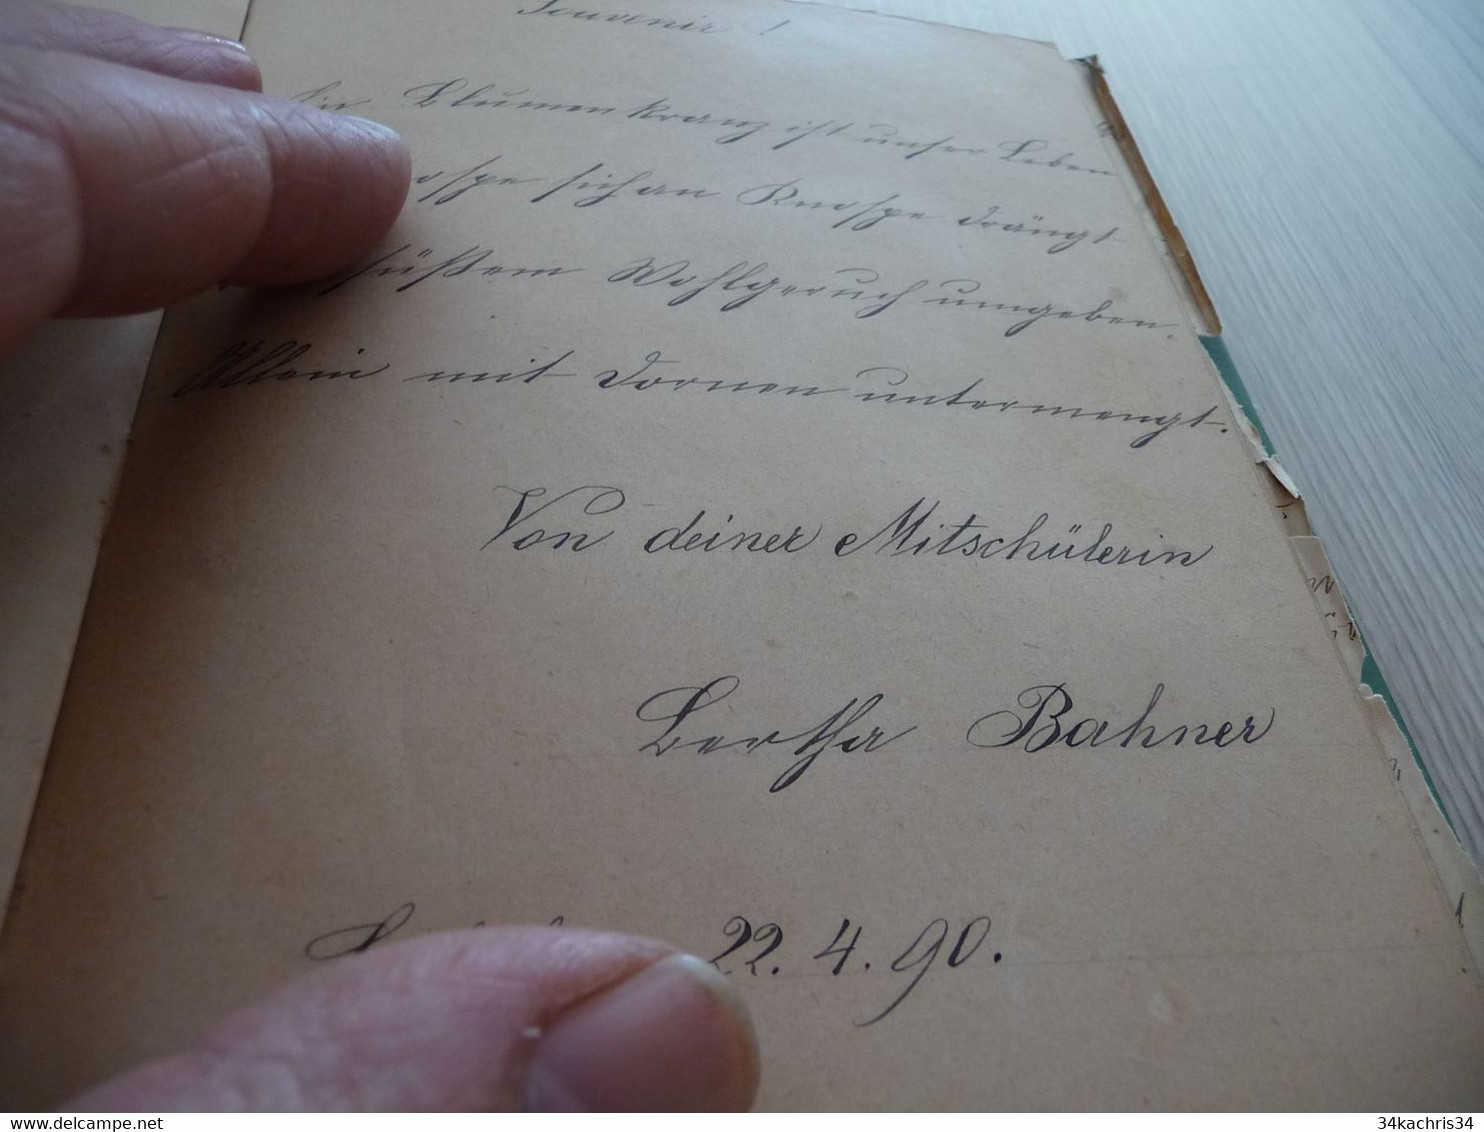 Cahier manuscrit Allemagne Autriche fin XIX ème + 30 poèmes originaux et textes autographes en l'état